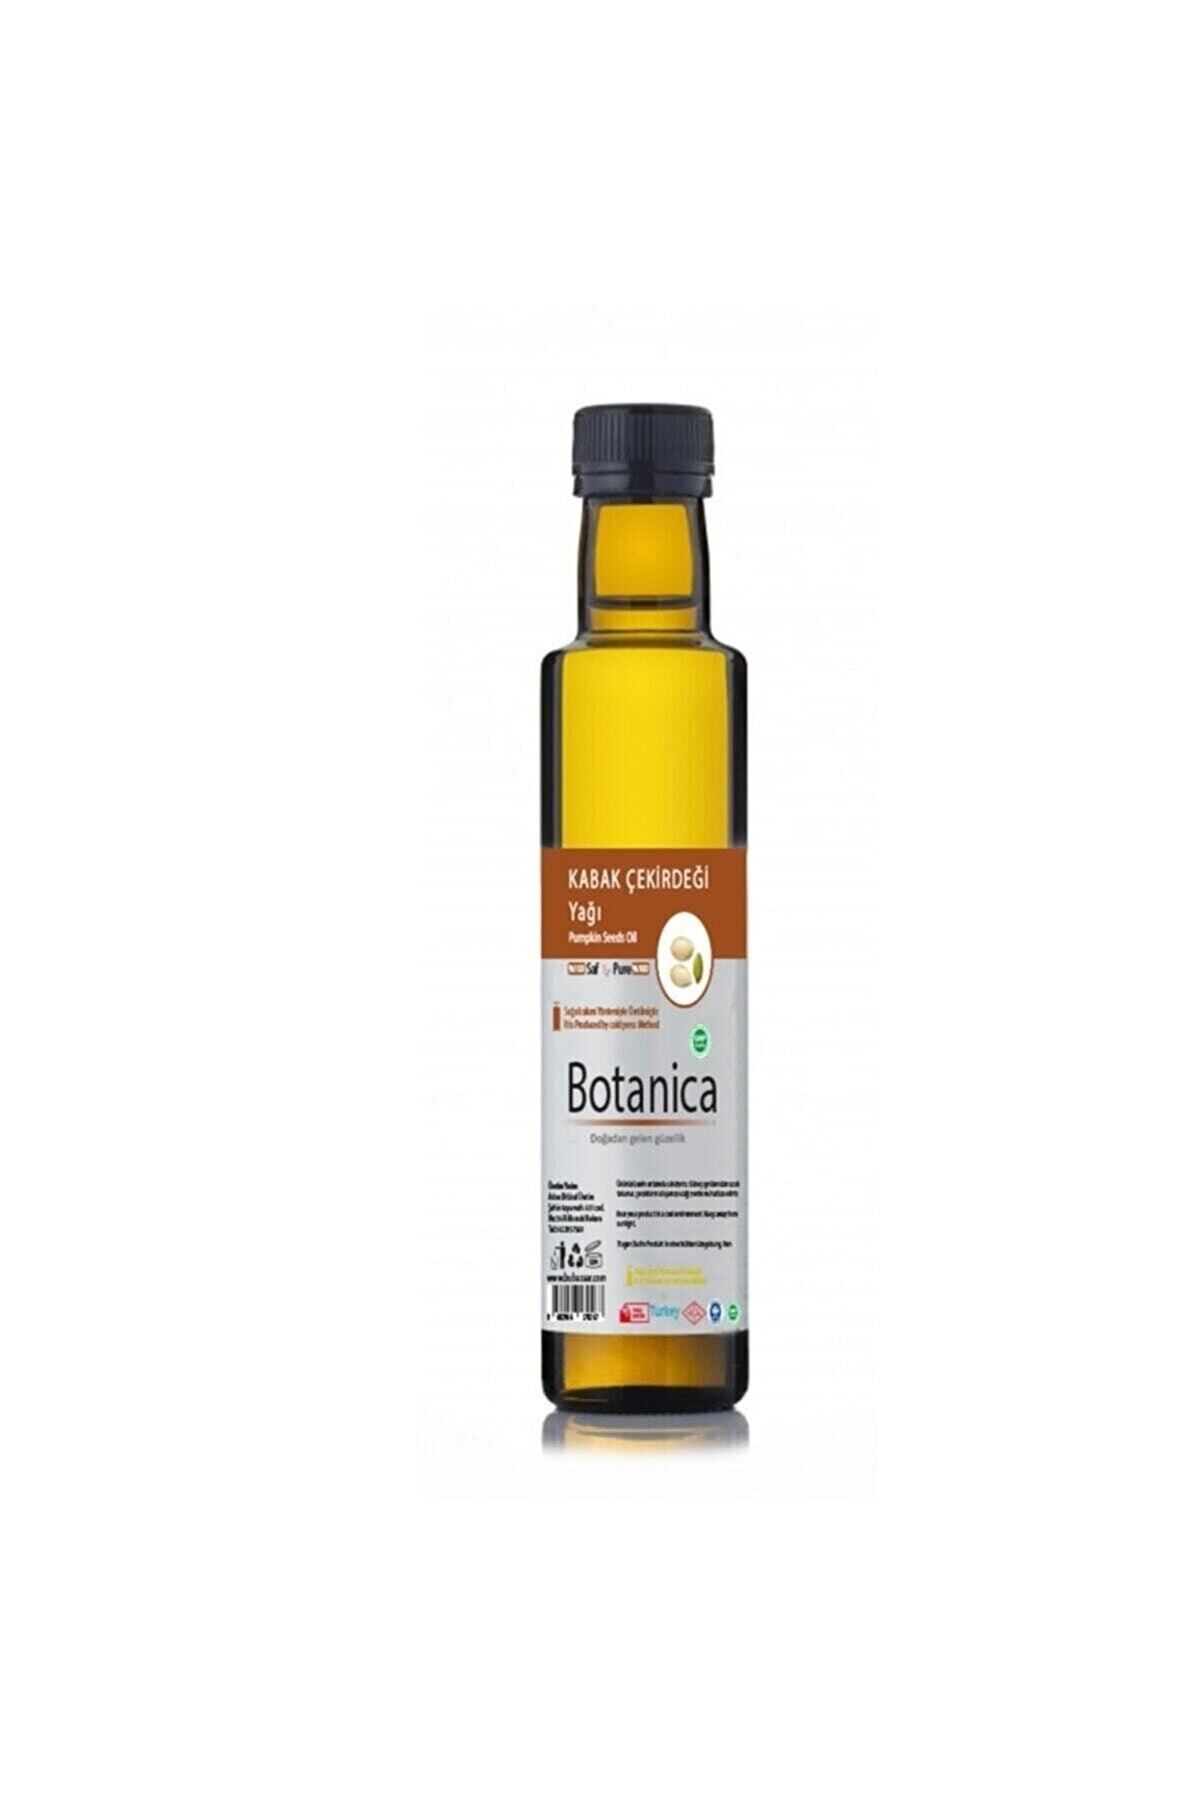 botanica Kabak Çekirdeği Yağı - Cucurbita Pepo - ( Sağlık - Saç Ve Cilt Bakımı ) Pumpkin Seeds Oil 250 ml